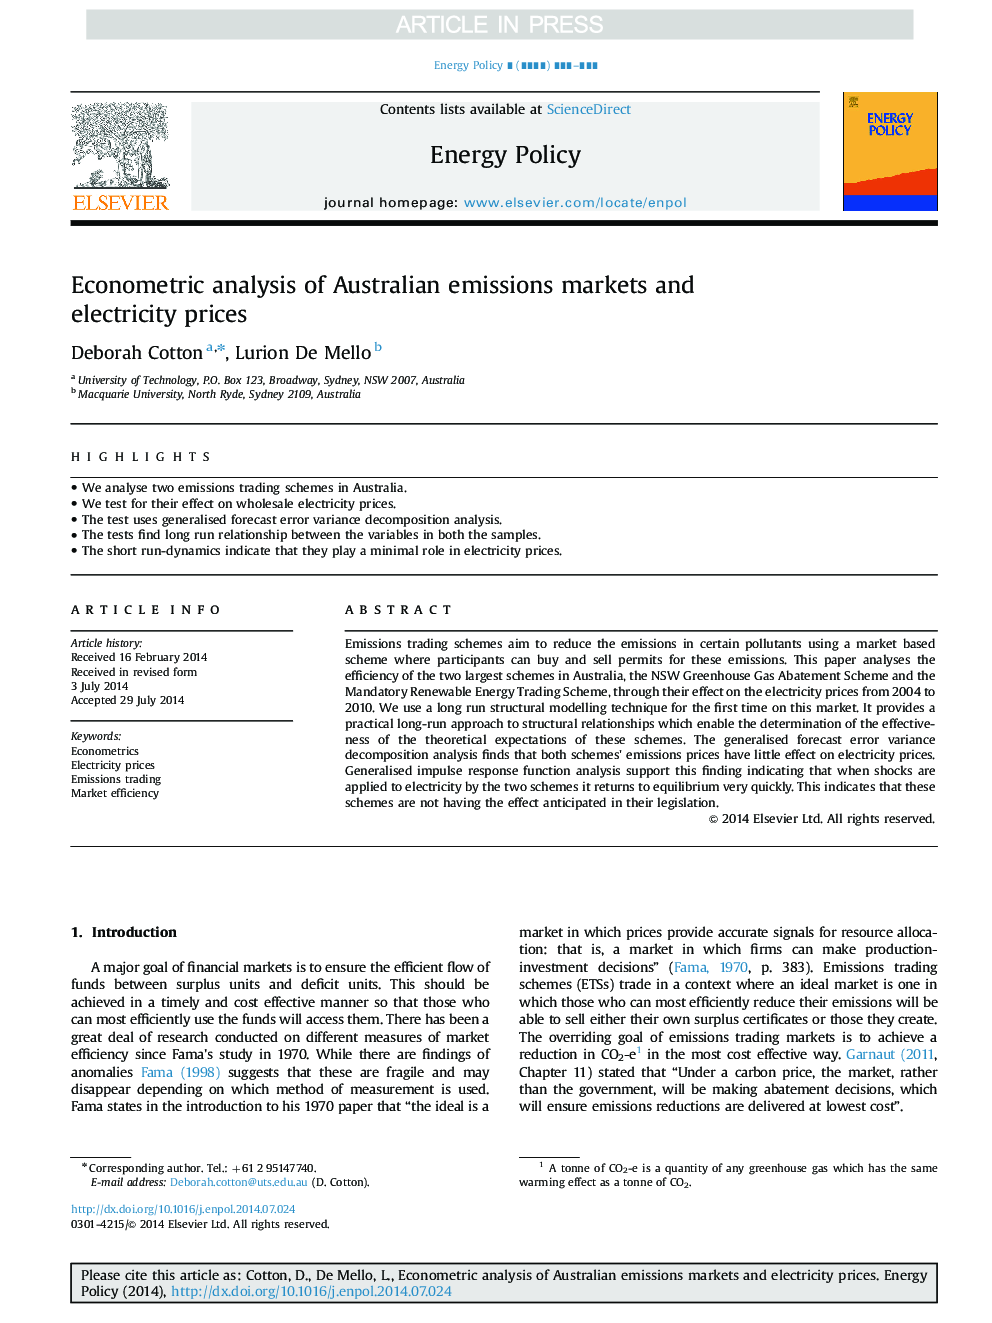 تجزیه و تحلیل اقتصادسنجی بازارهای انتشار گاز استرالیا و قیمت برق 